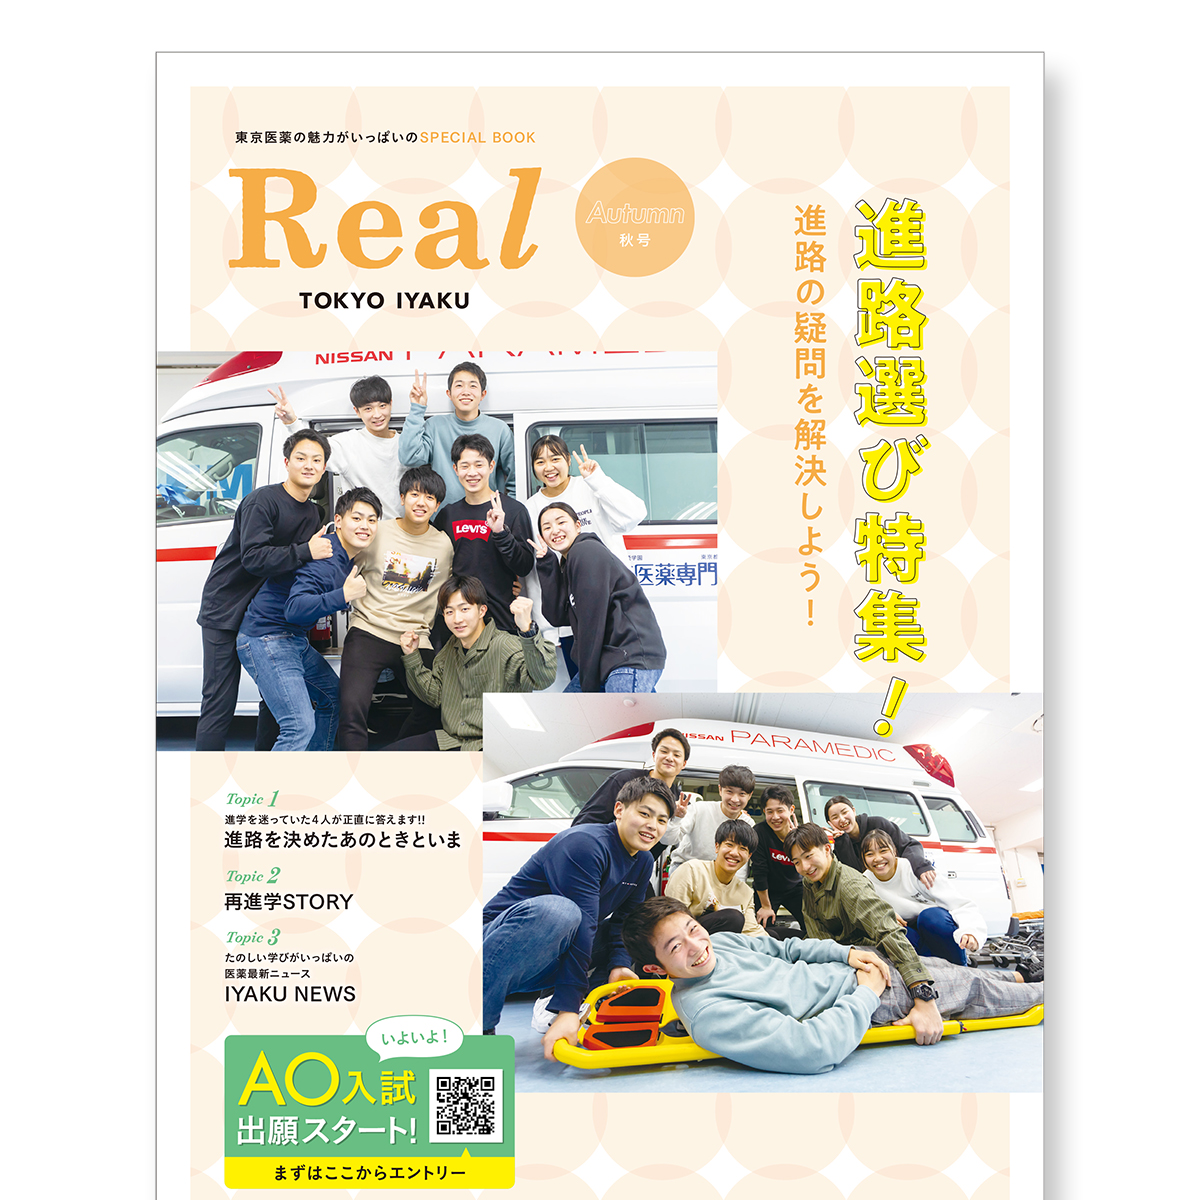 東京医薬の魅力がいっぱいのSPECIAL BOOK「Real TOKYO IYAKU【秋号】」